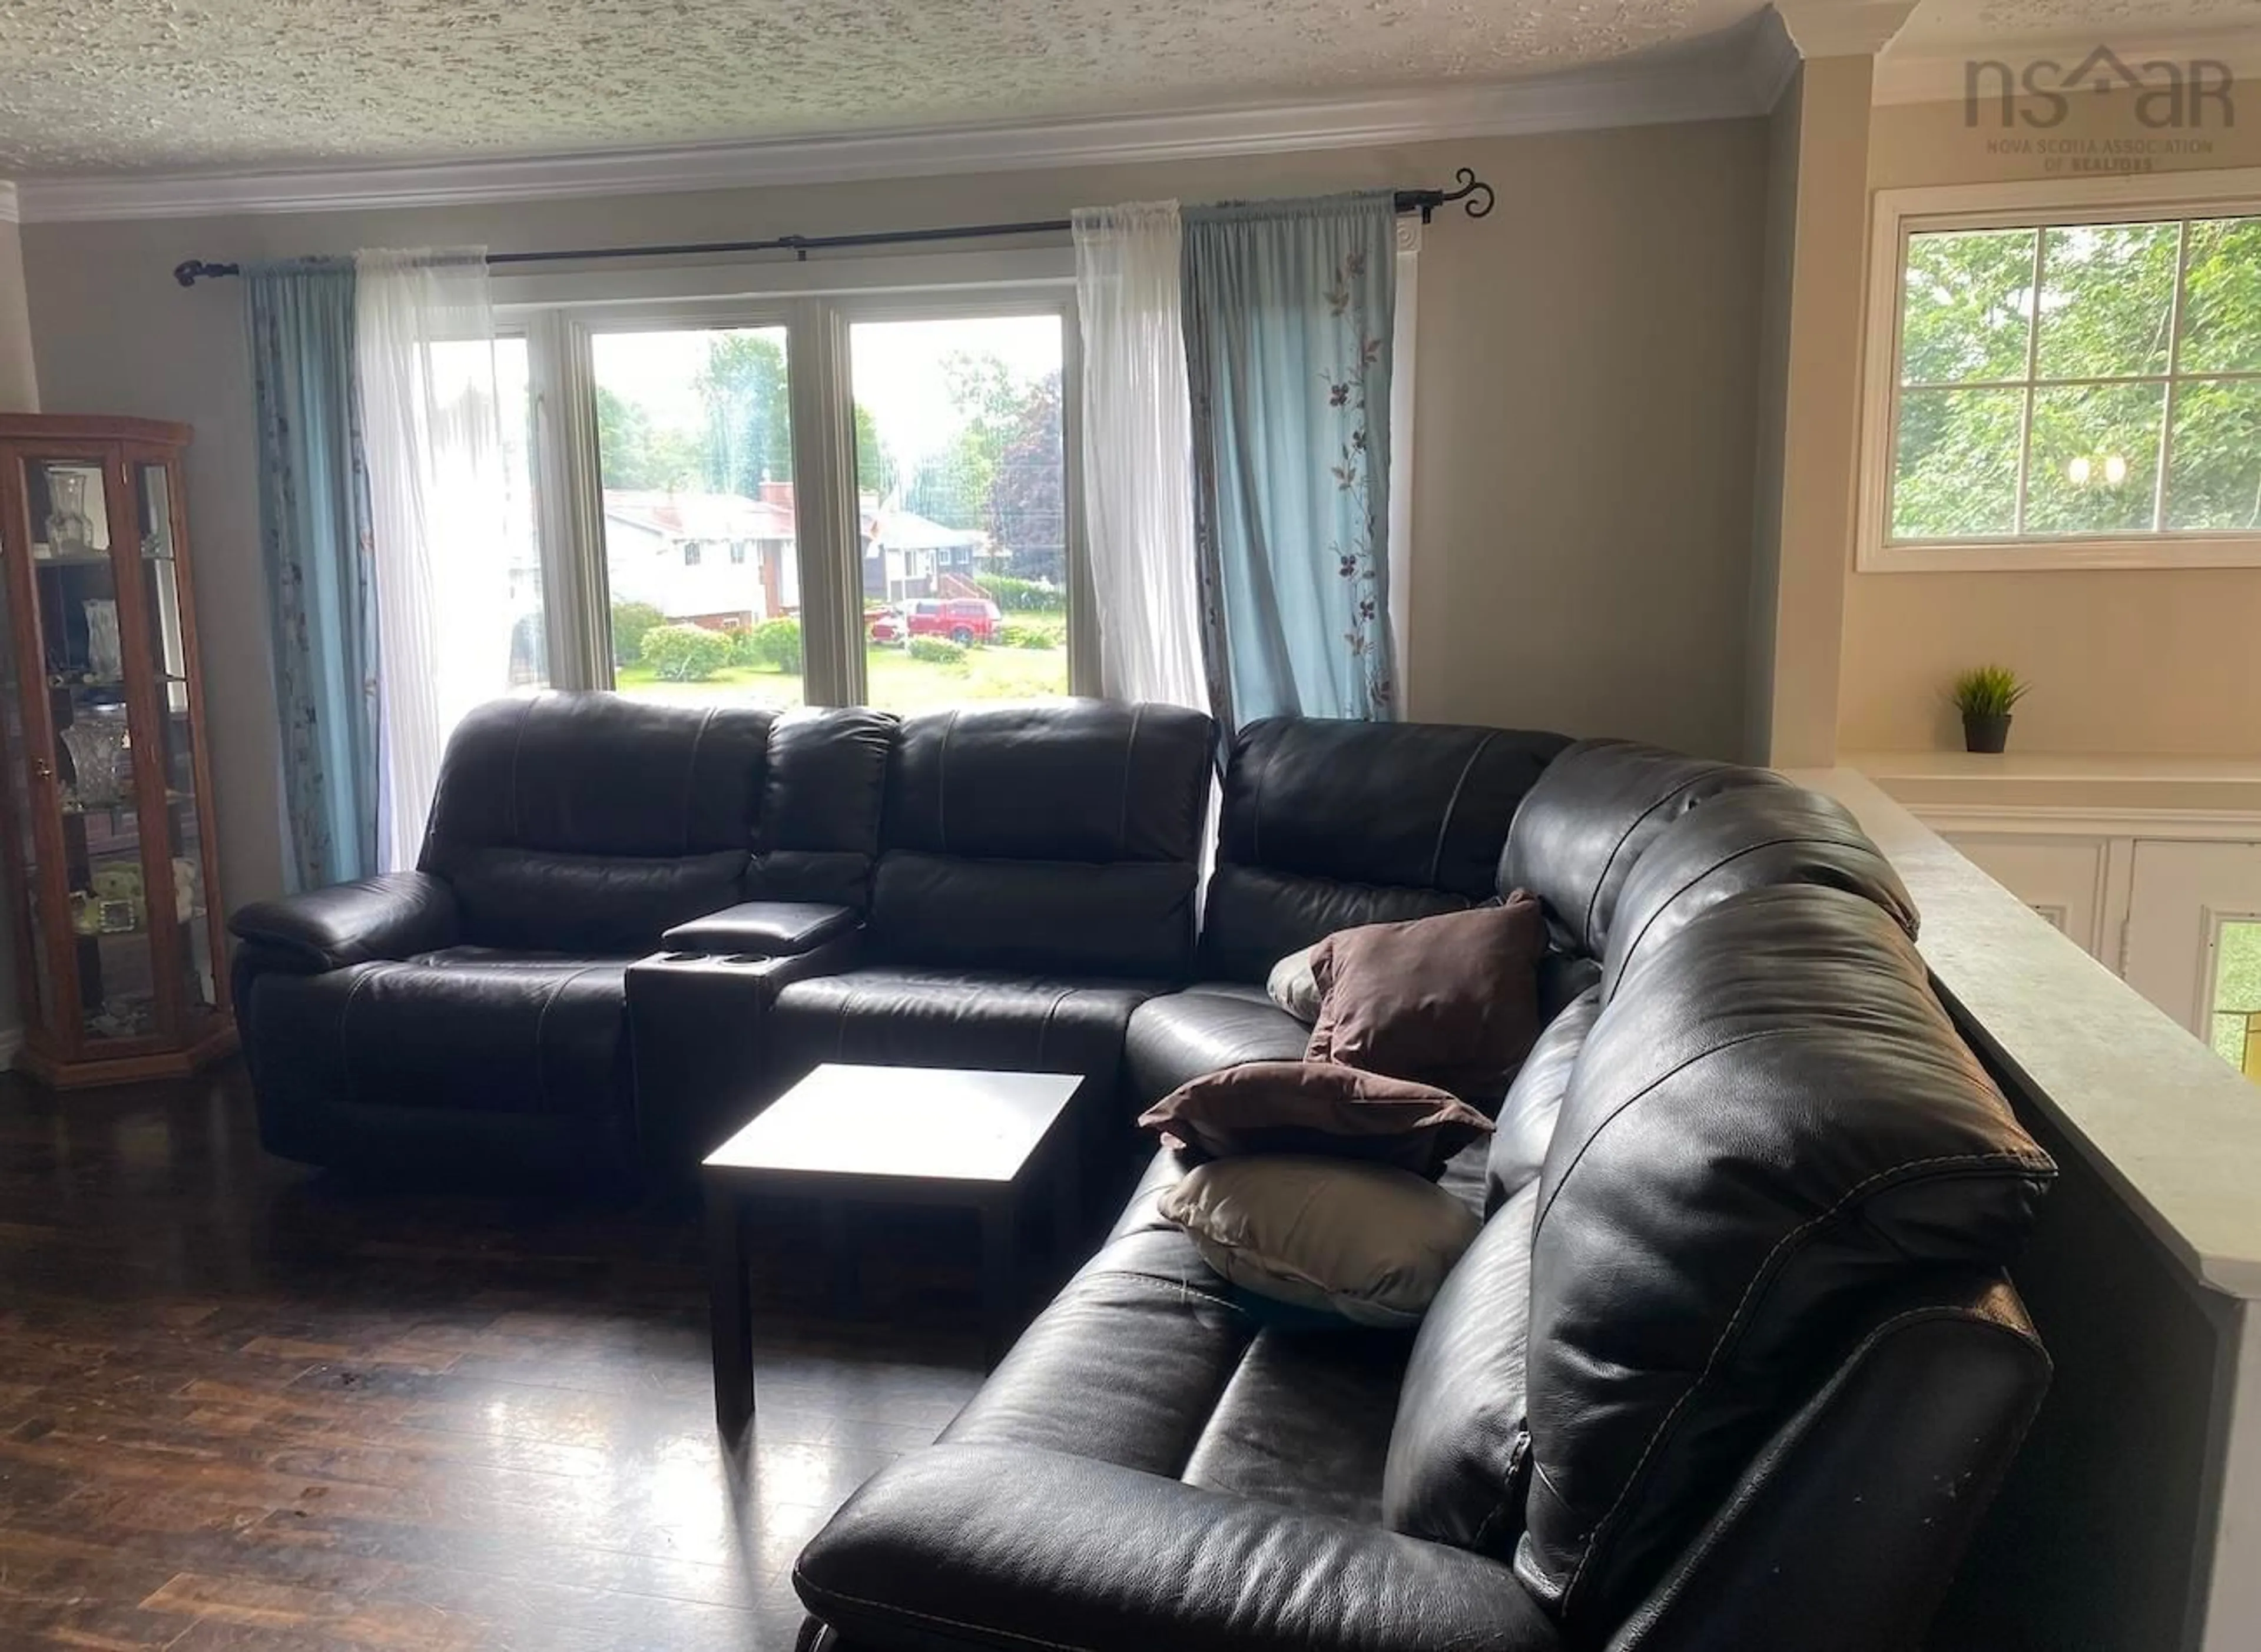 Living room for 38 Lydgate Dr, Lower Sackville Nova Scotia B4C 2H6